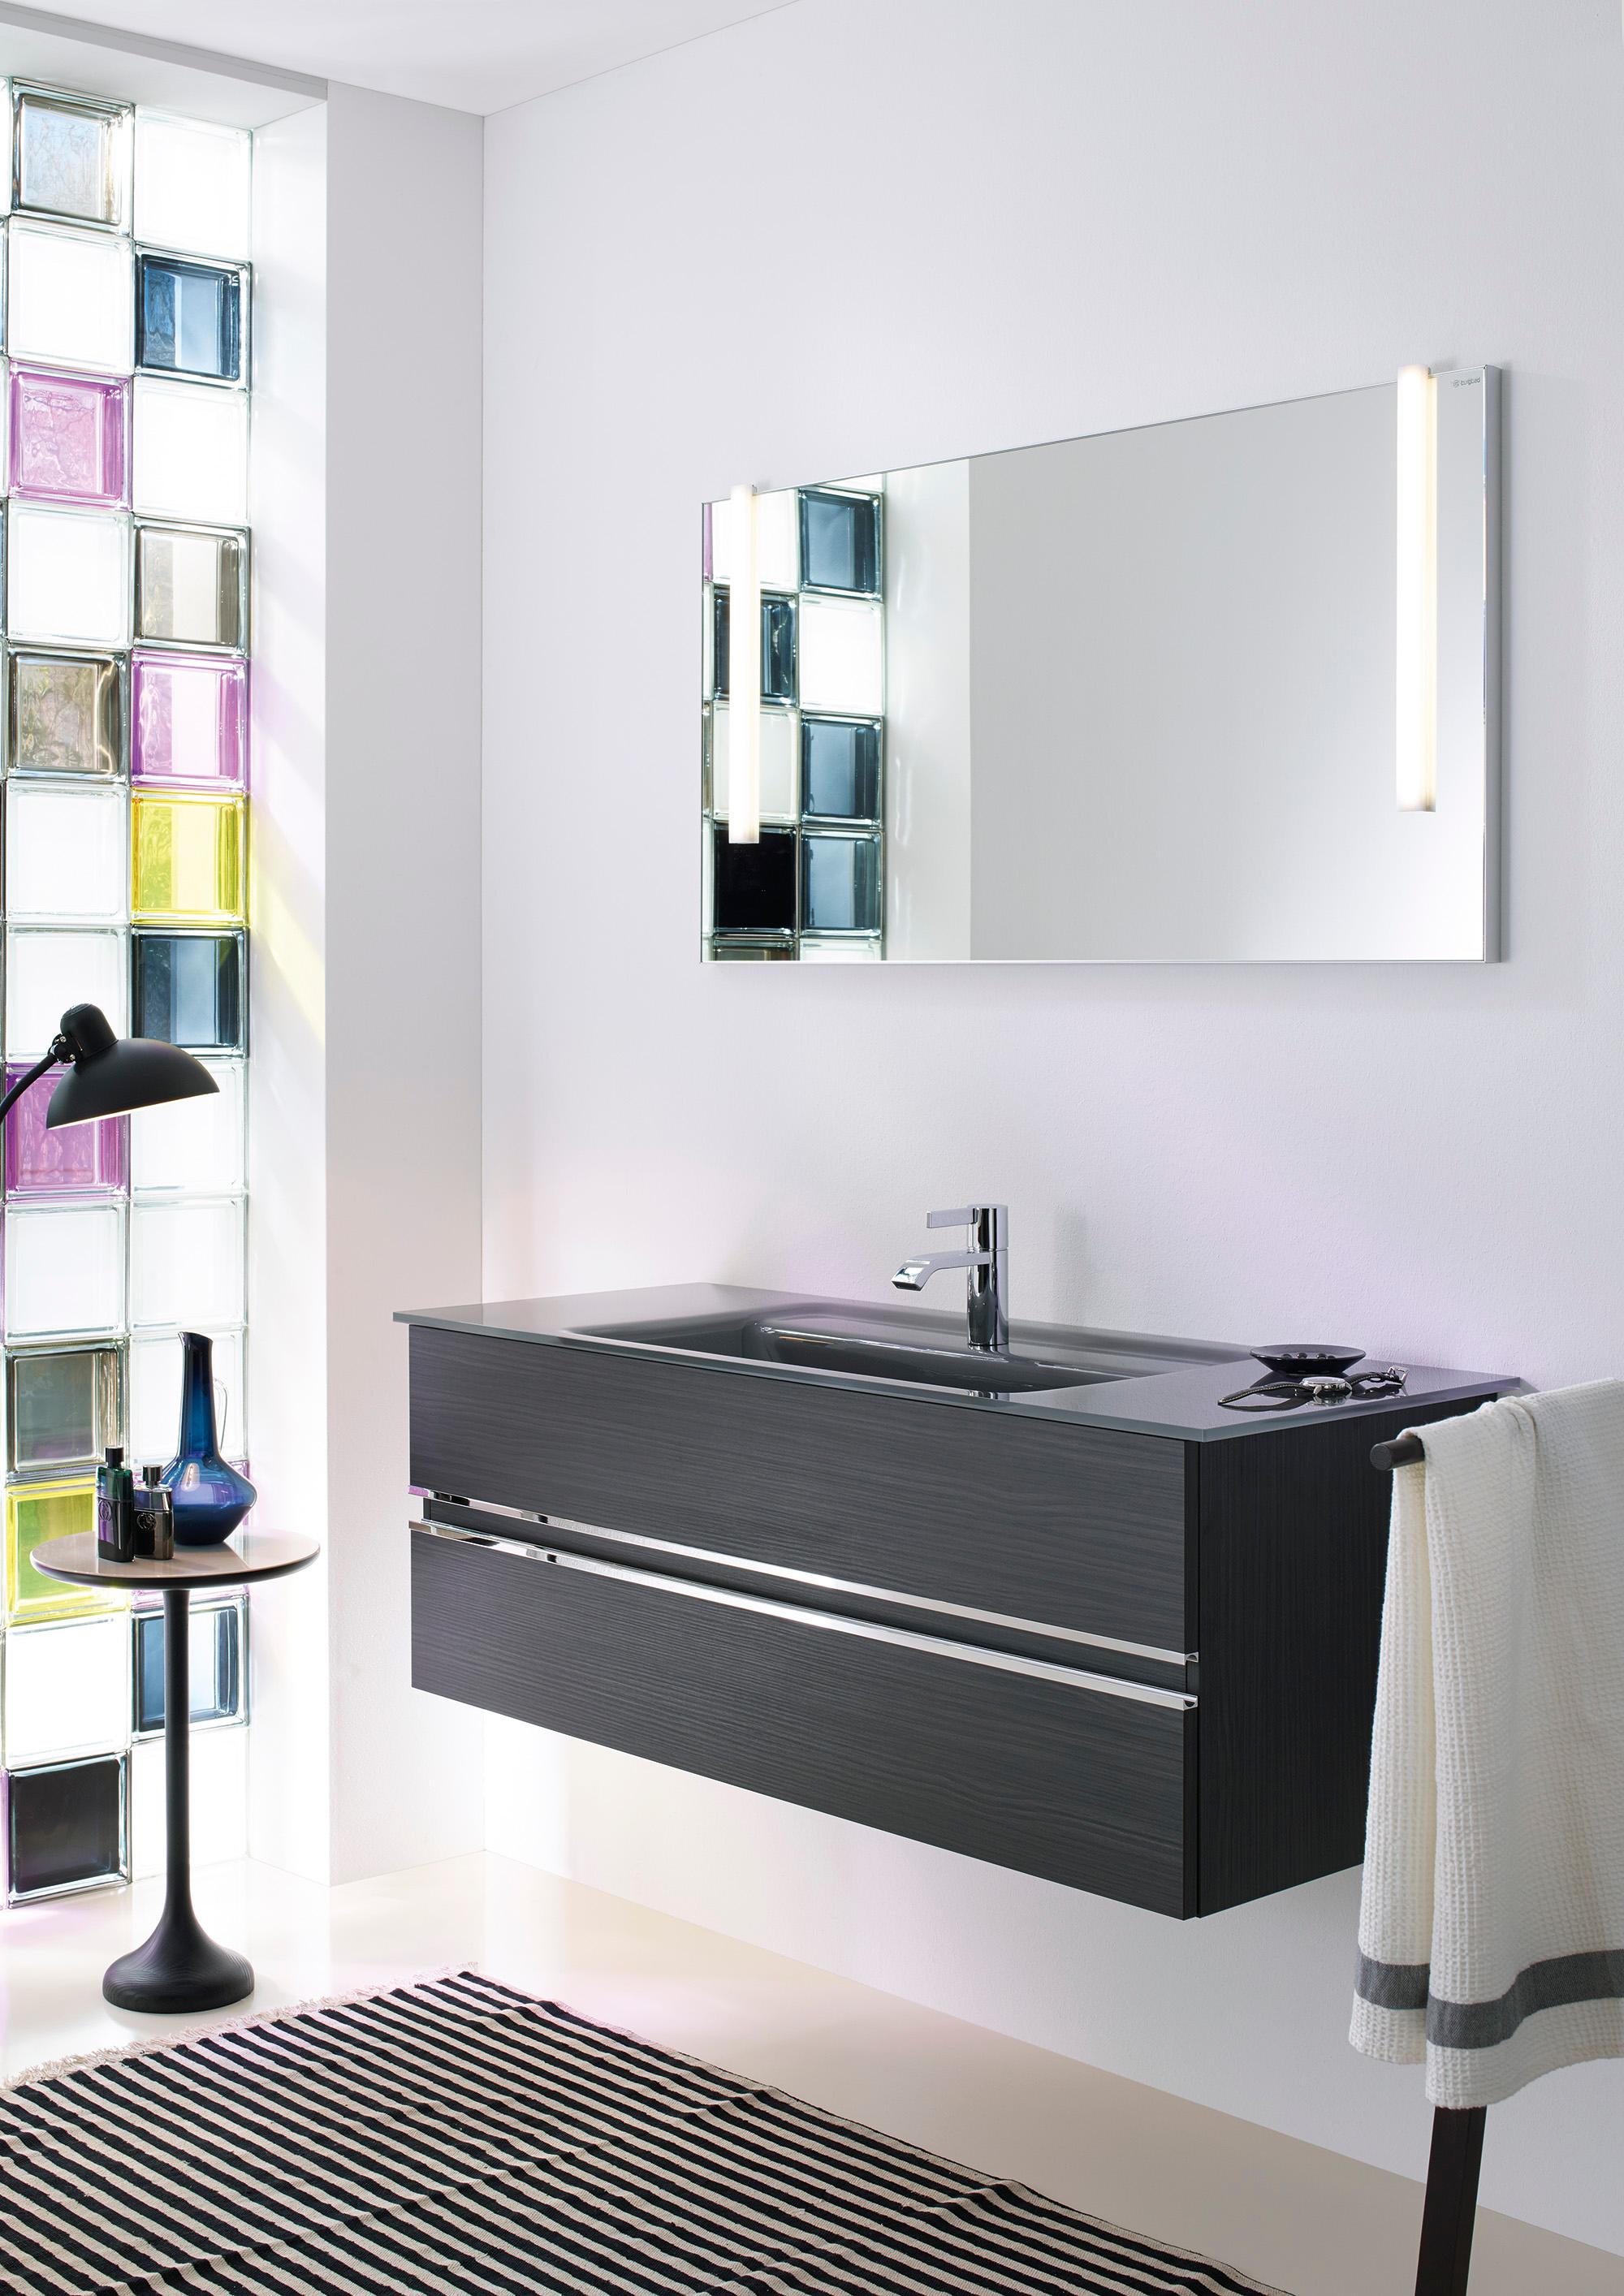 burgbad Bel mit dunkelgrauem Glaswaschtisch #bad #badezimmer #spiegel #waschtisch #waschbecken #modernesbadezimmer ©nexus product design